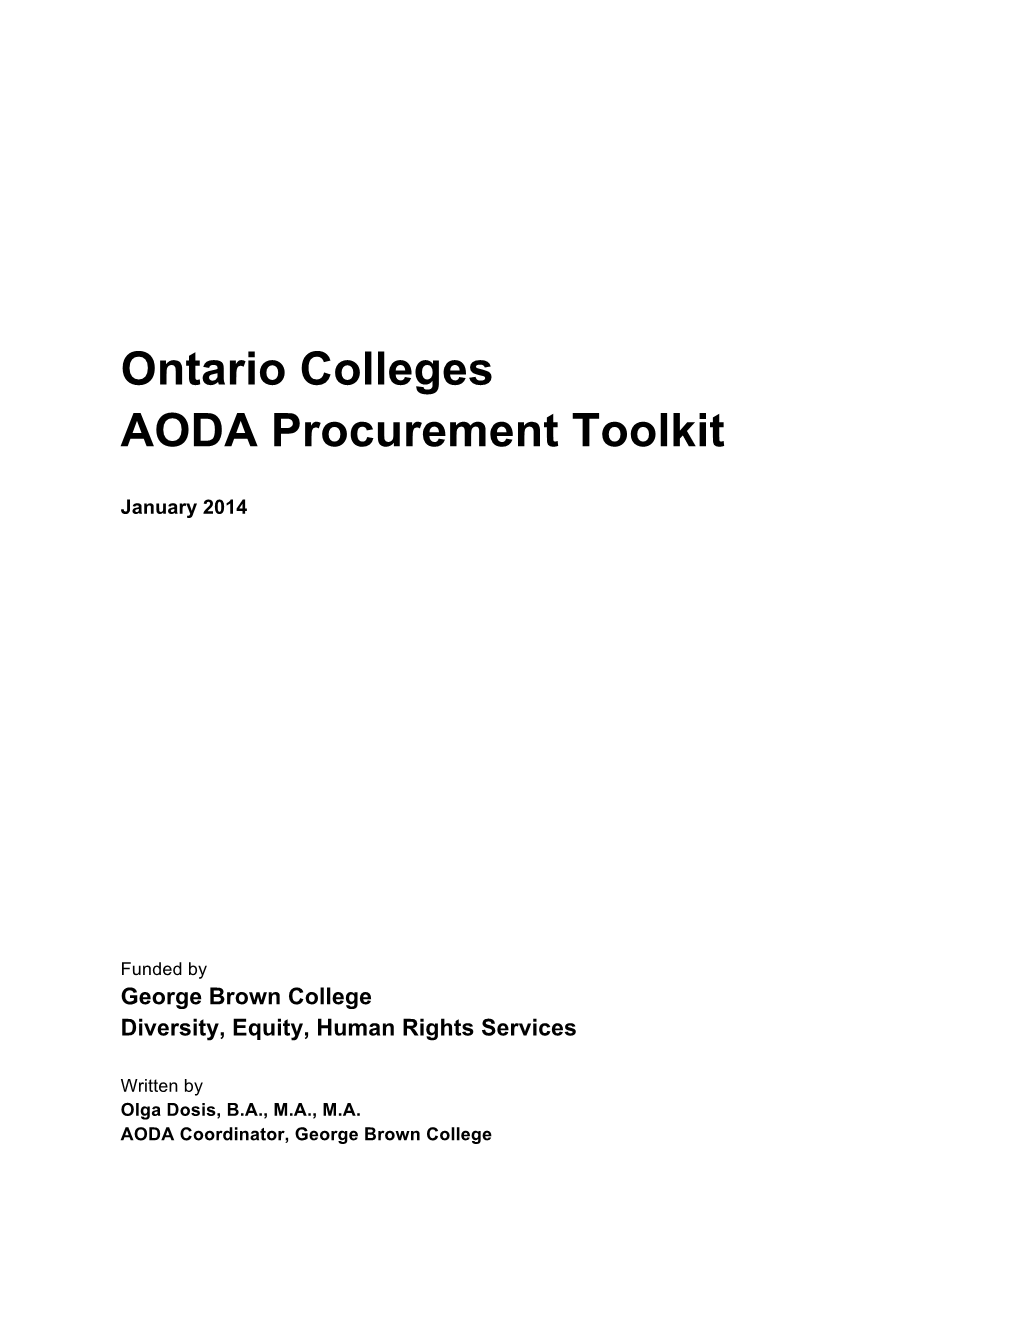 Ontario Colleges AODA Procurement Toolkit